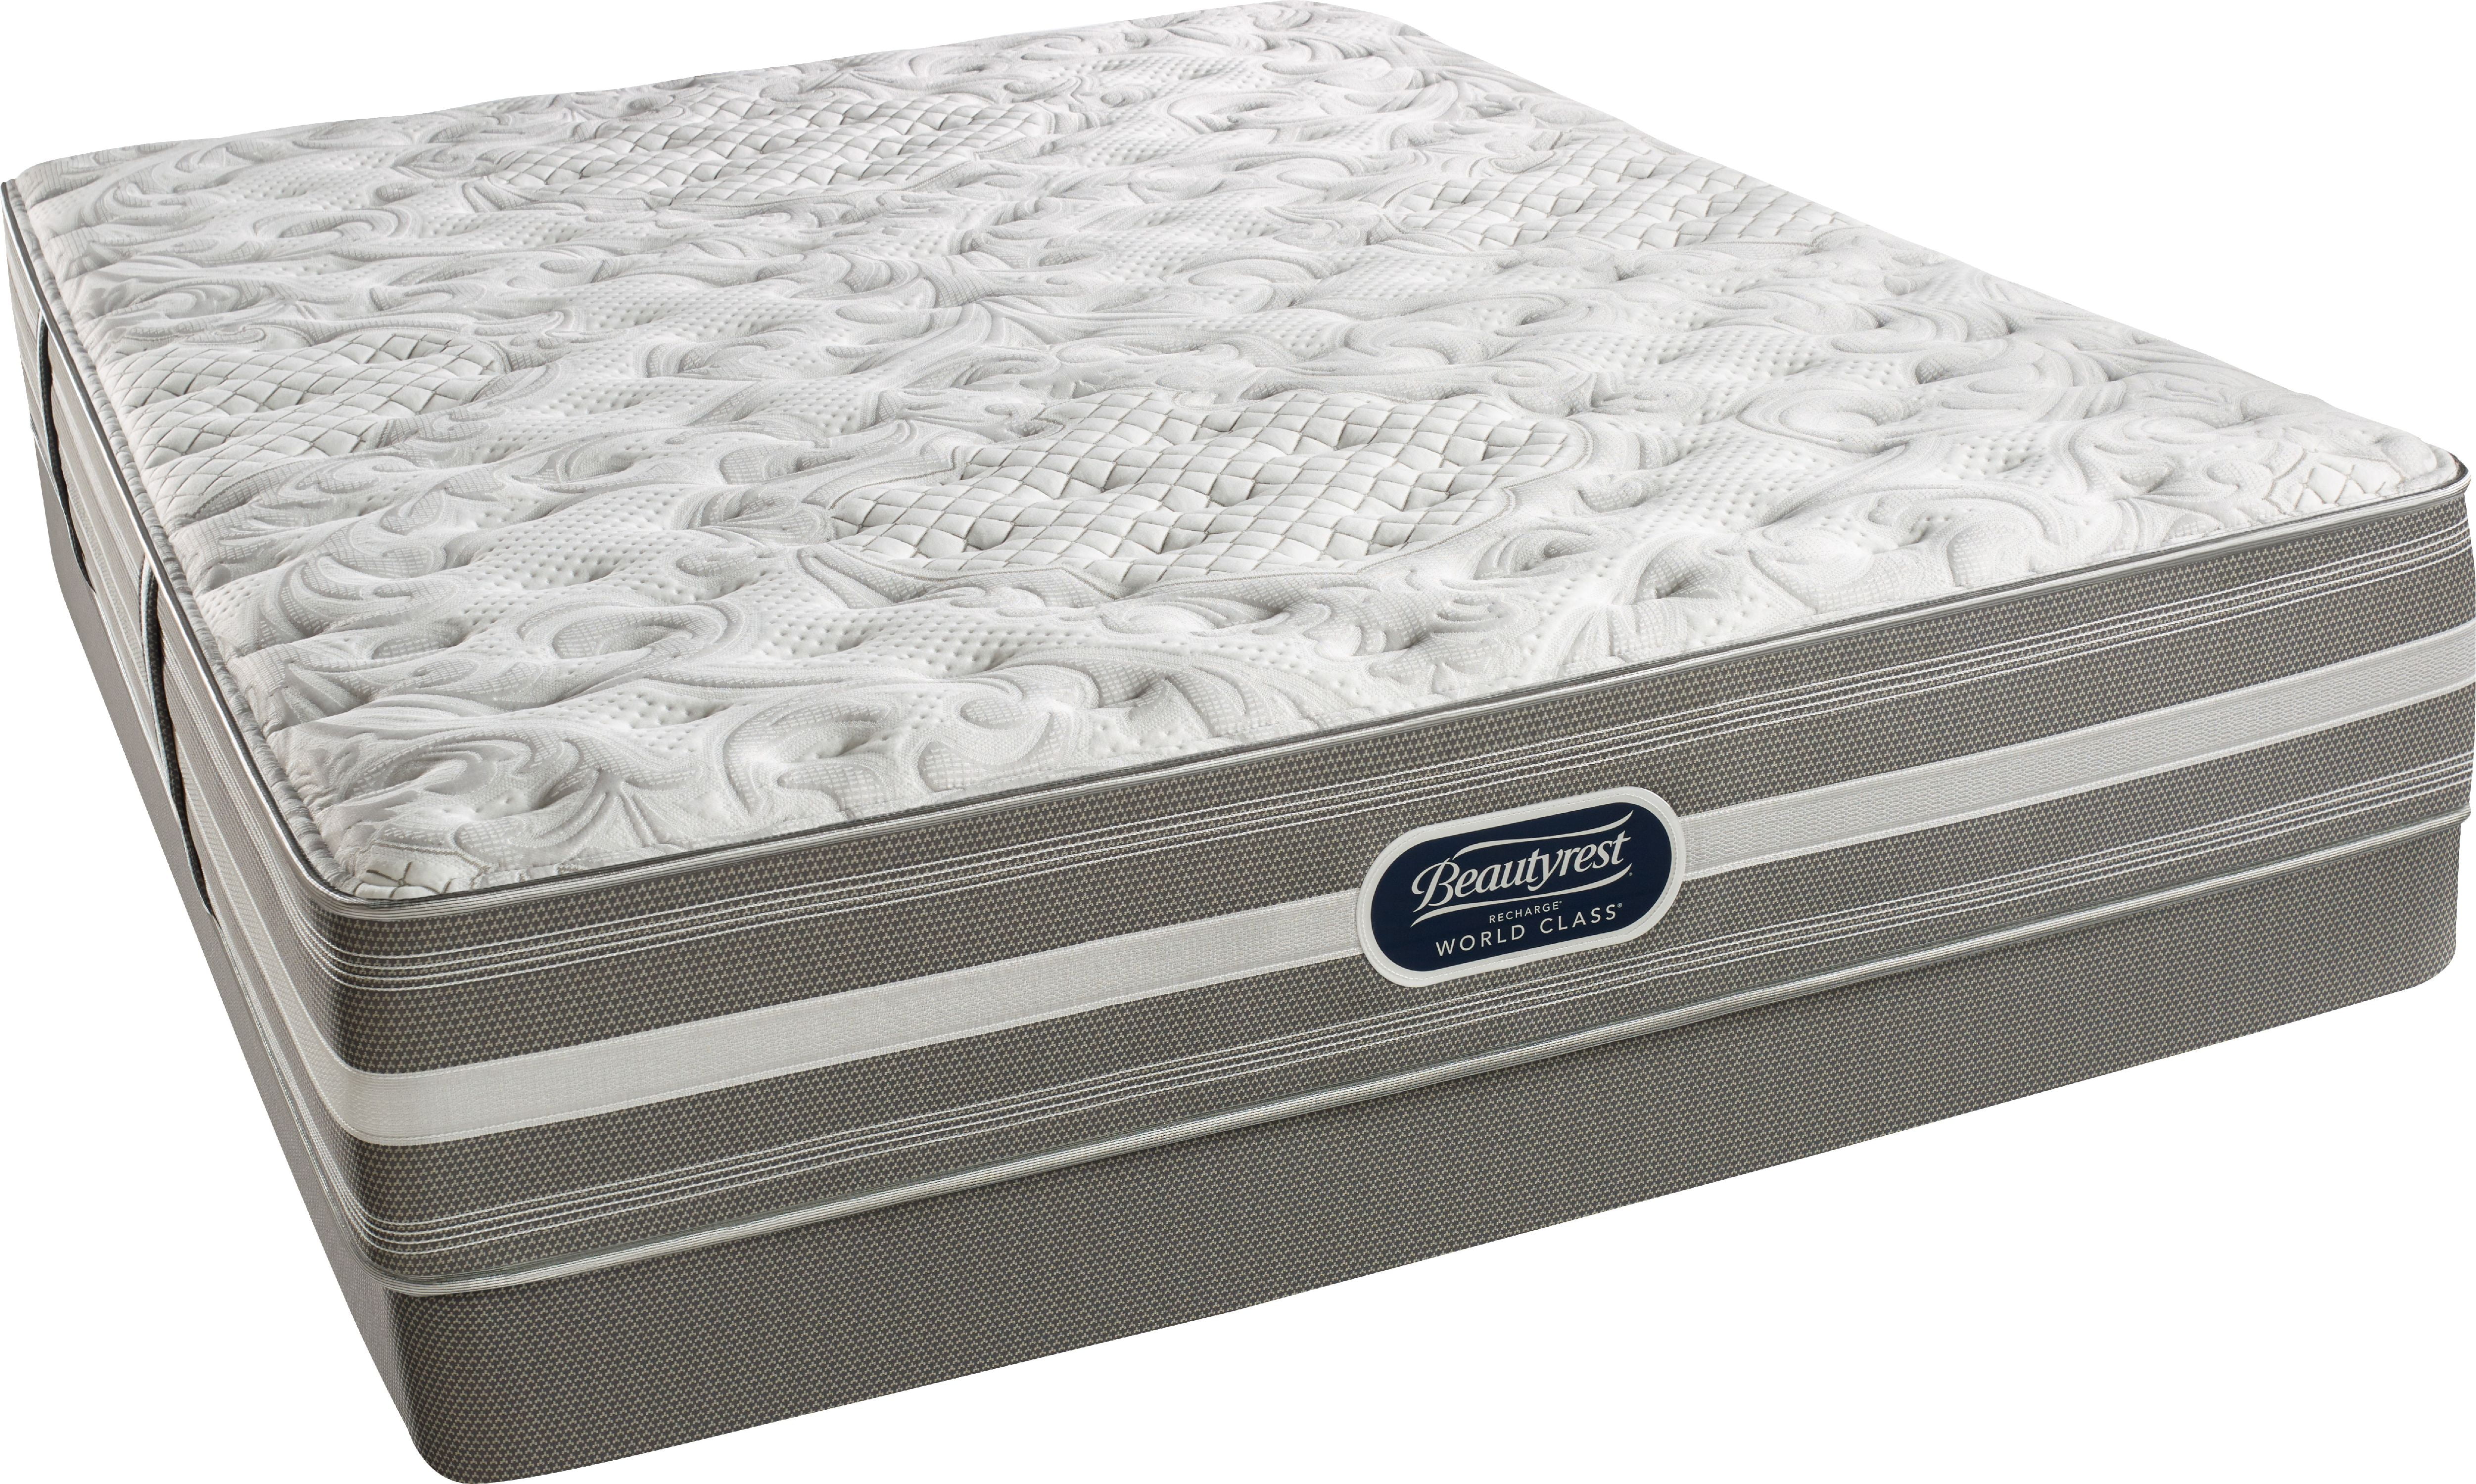 beautyrest world recharge world class queen mattress